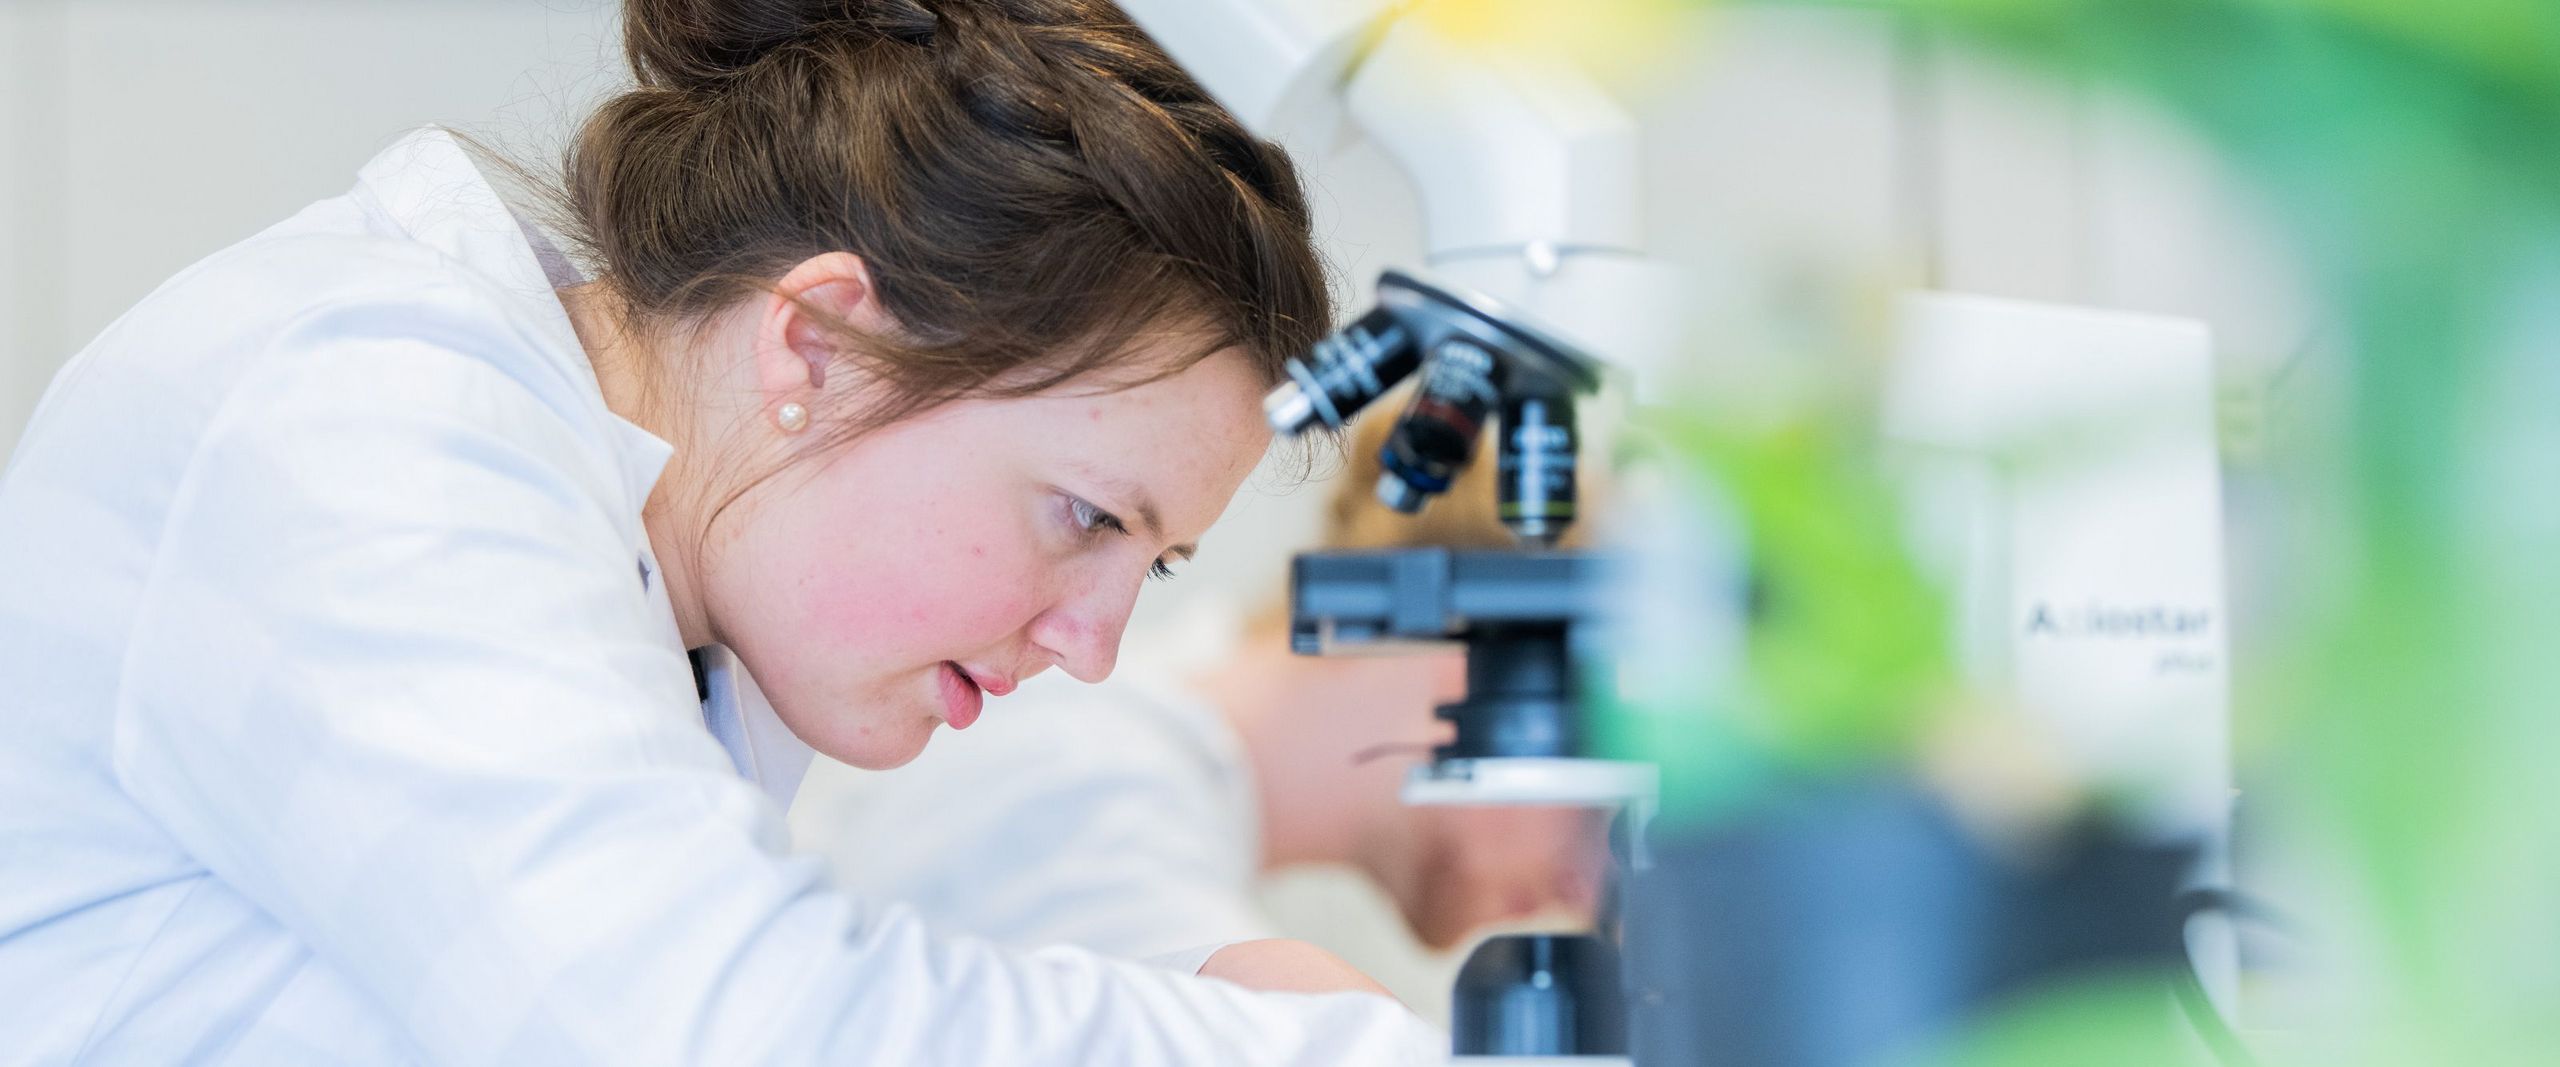 Eine Studentin im Laborkittel beugt sich über ihren Arbeitsplatz neben einem Mikroskop.